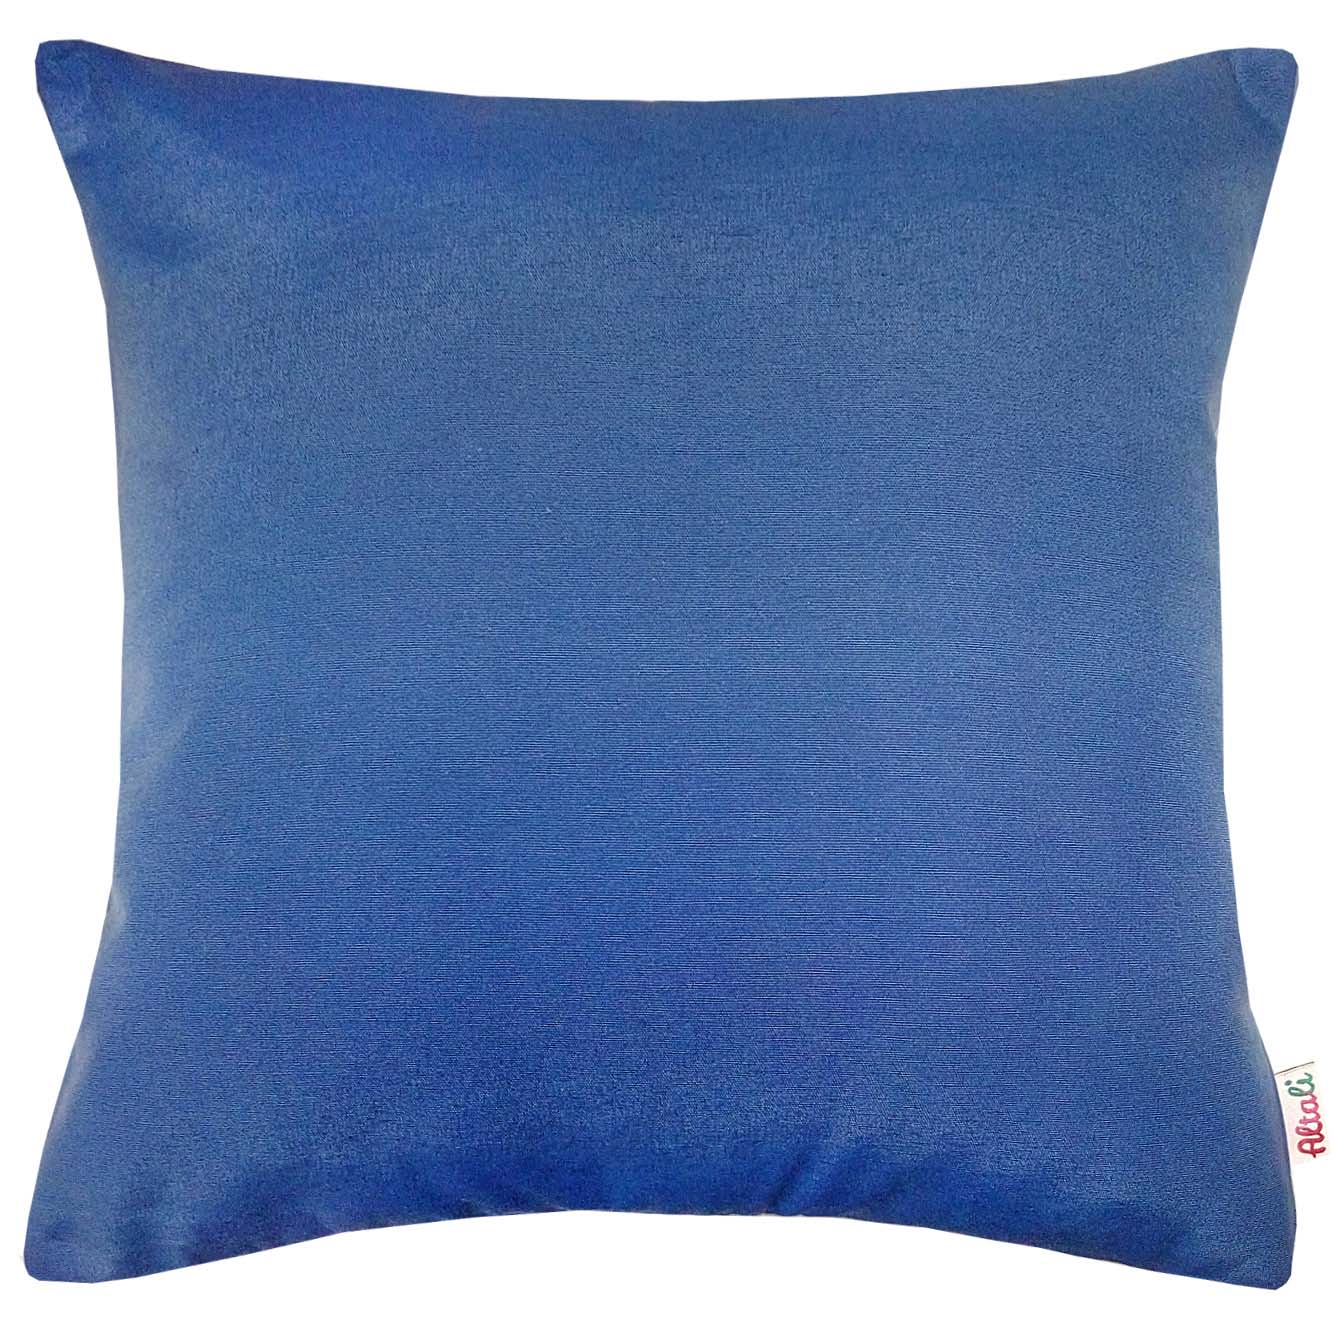 Наволочки большие размеры. Подушка синий. Подушка декоративная голубая. + Подушка голубой. Синий диван с подушками.